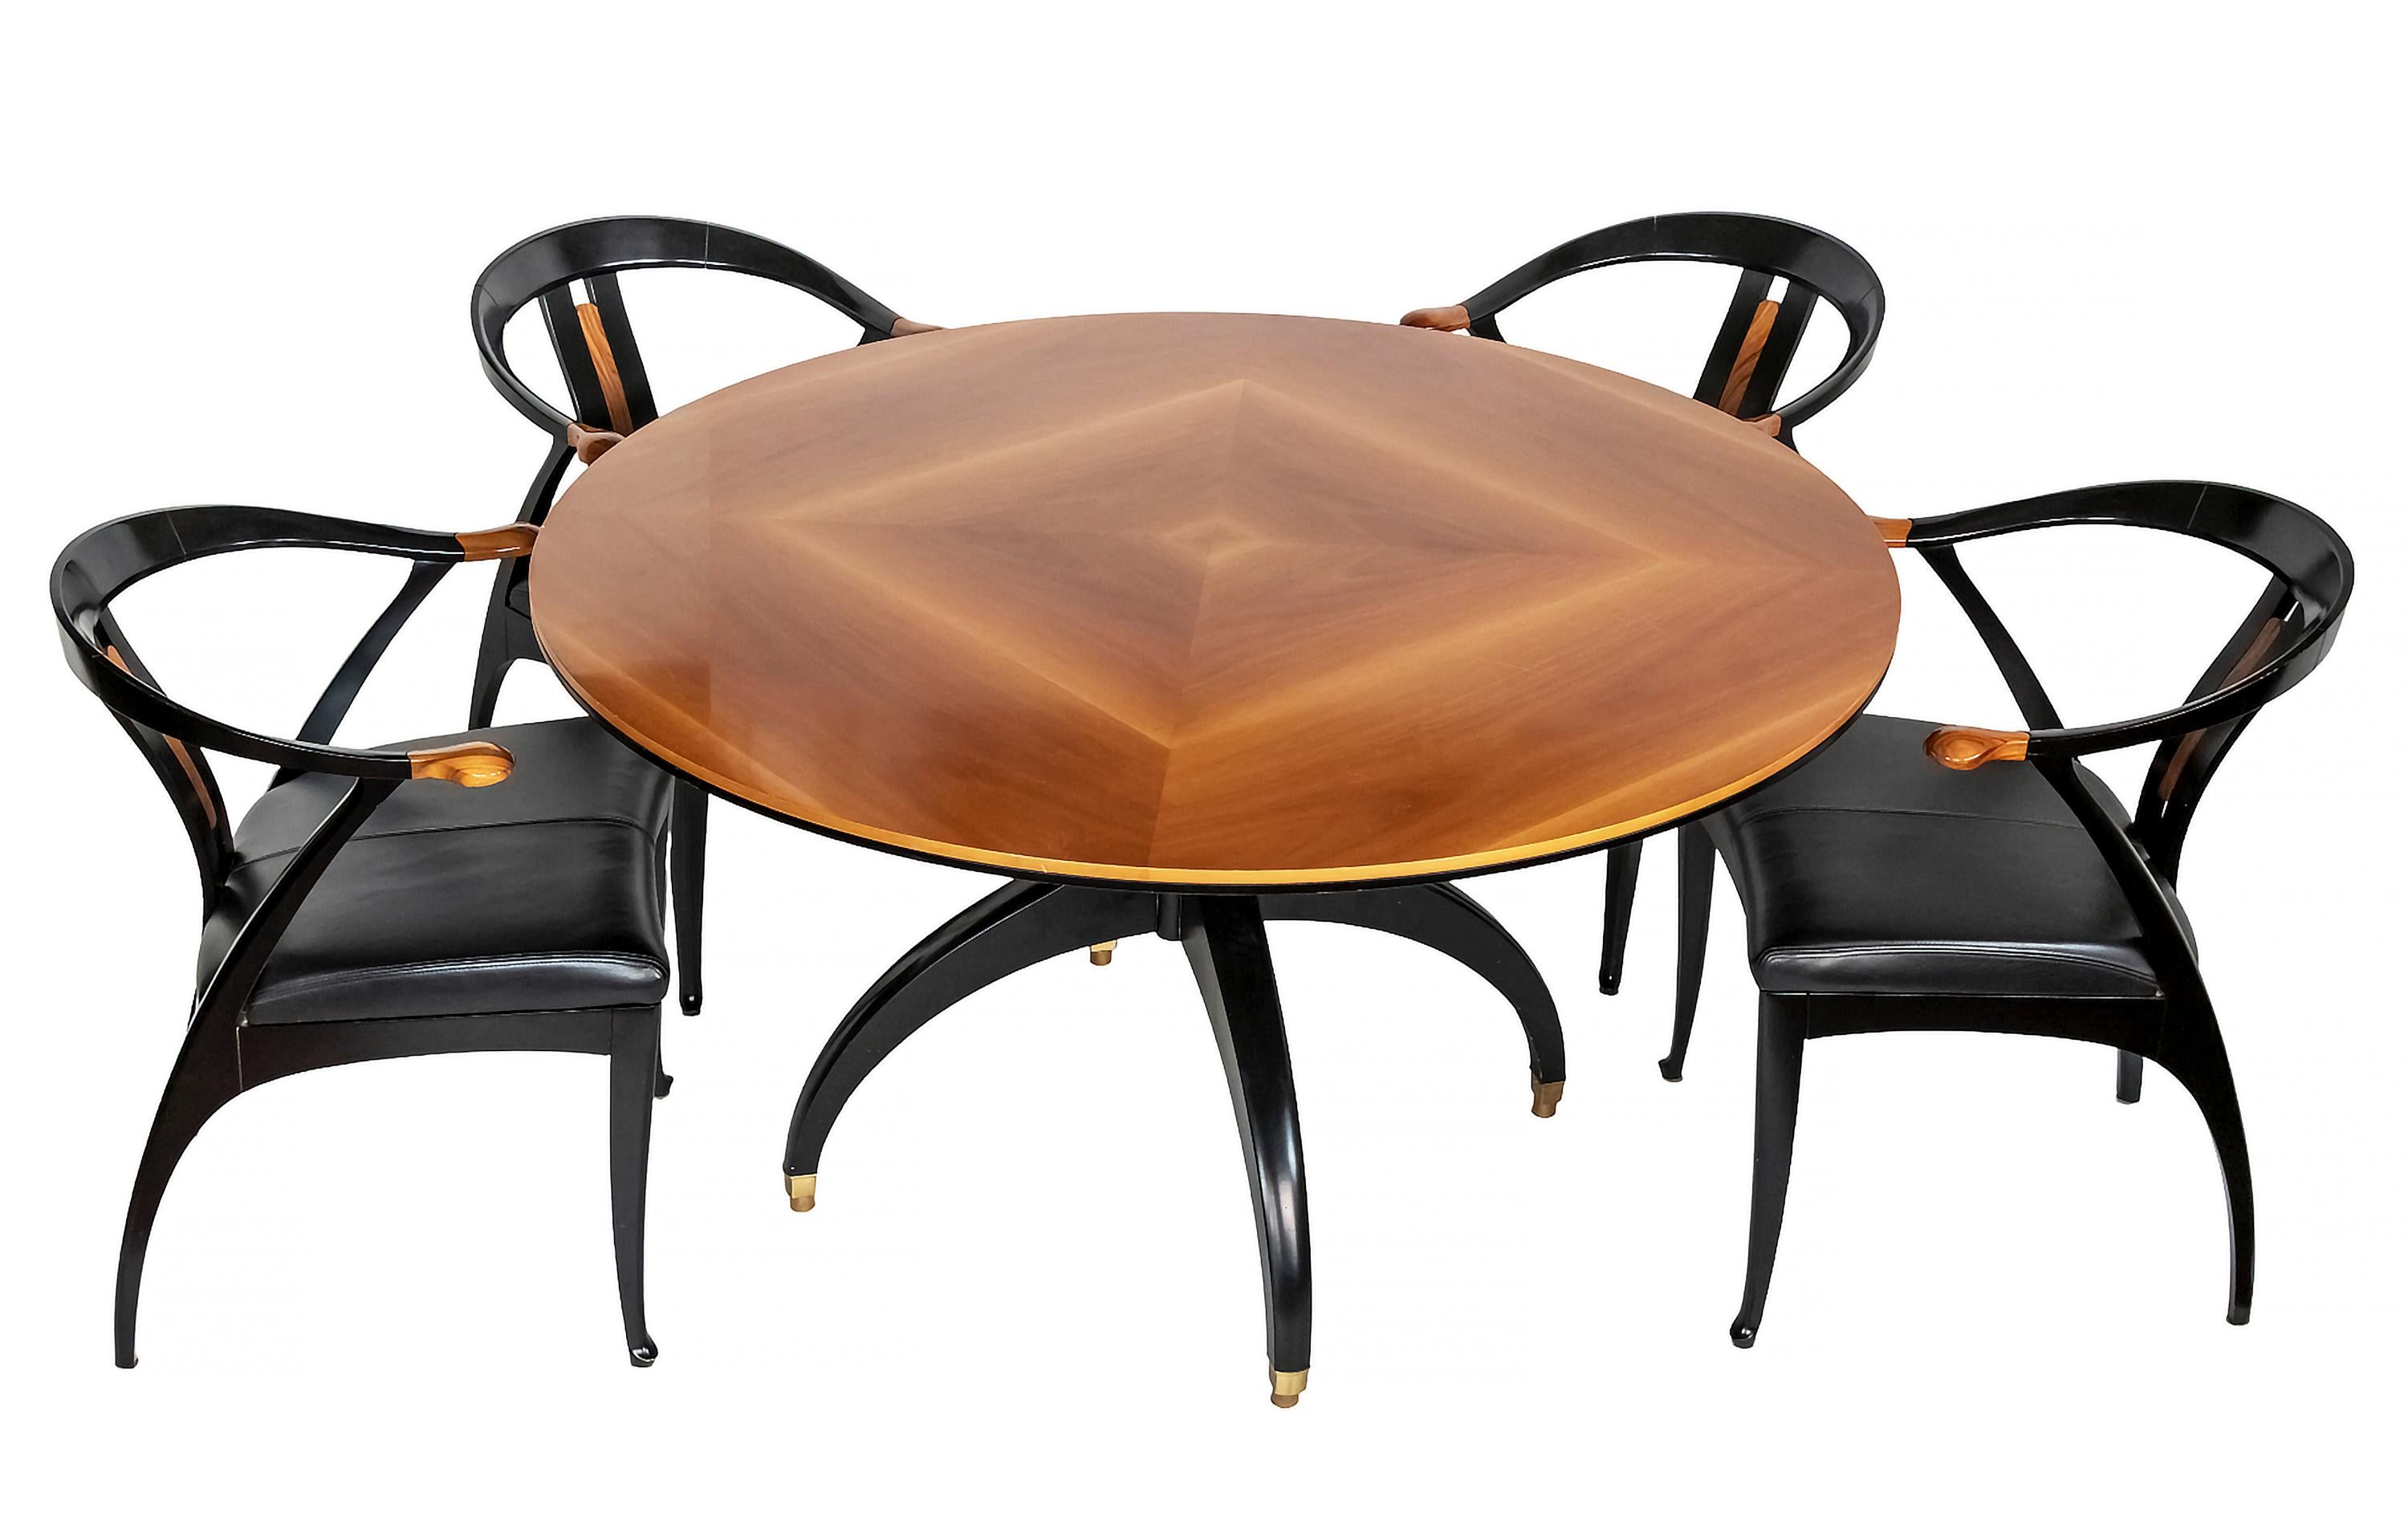 Ensemble de salle à manger Giorgetti du milieu du siècle dernier comprenant une table et quatre chaises.
La table de salle à manger est en bois peint en noir avec un plateau en noyer et des détails en laiton sur les pieds. 
Les chaises sont